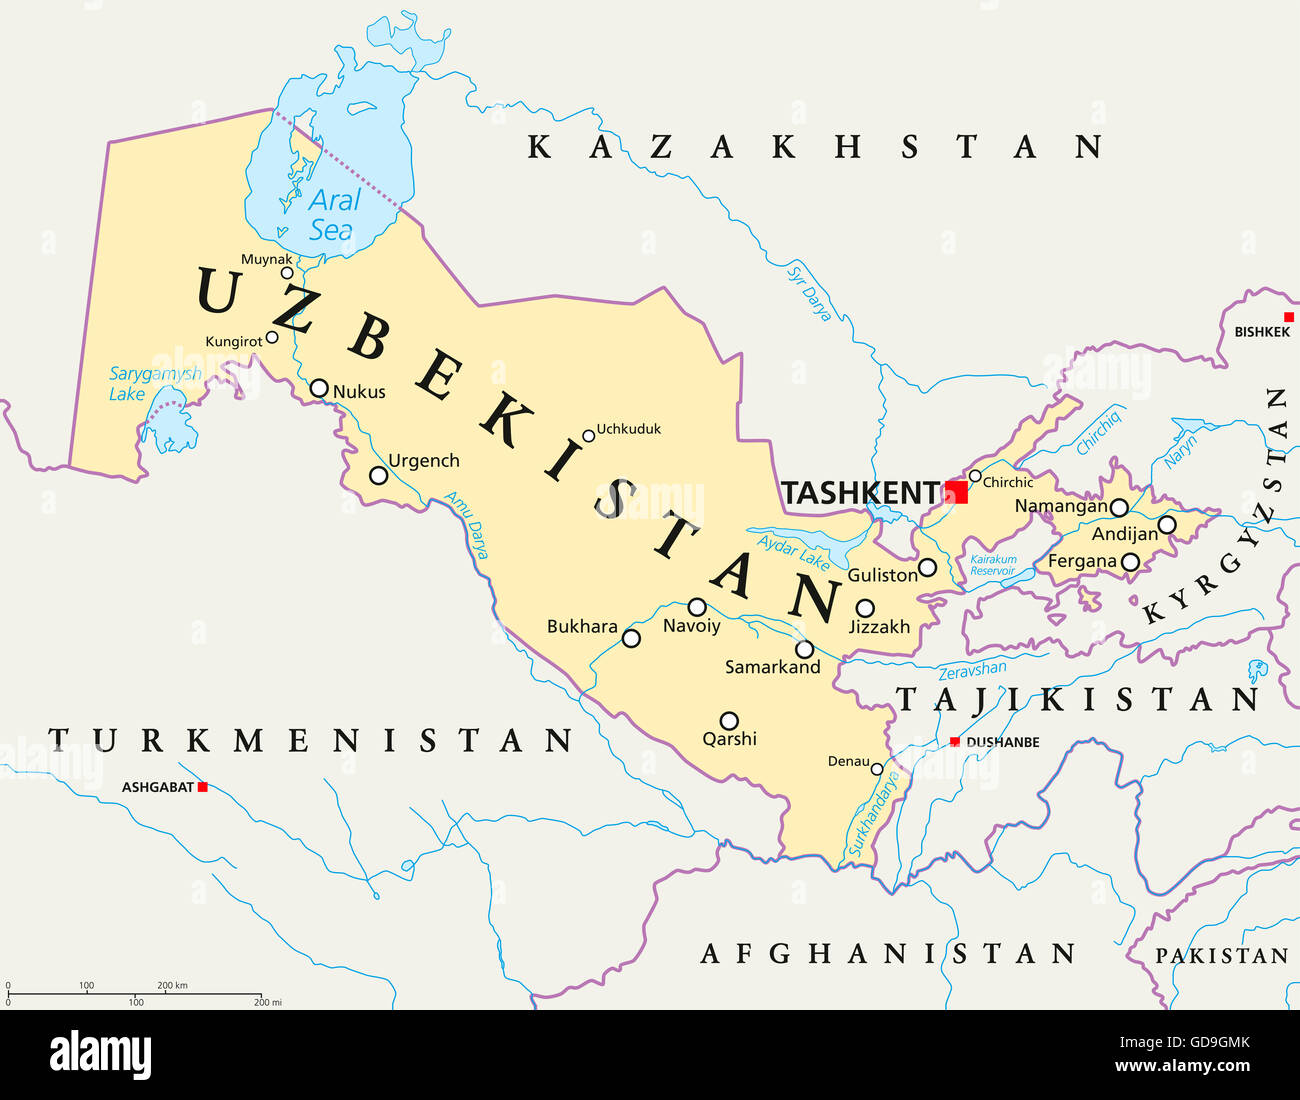 Carte politique de l'Ouzbékistan Tachkent, capitale avec les frontières nationales, d'importantes villes, rivières et lacs. Pays d'Asie centrale. Banque D'Images